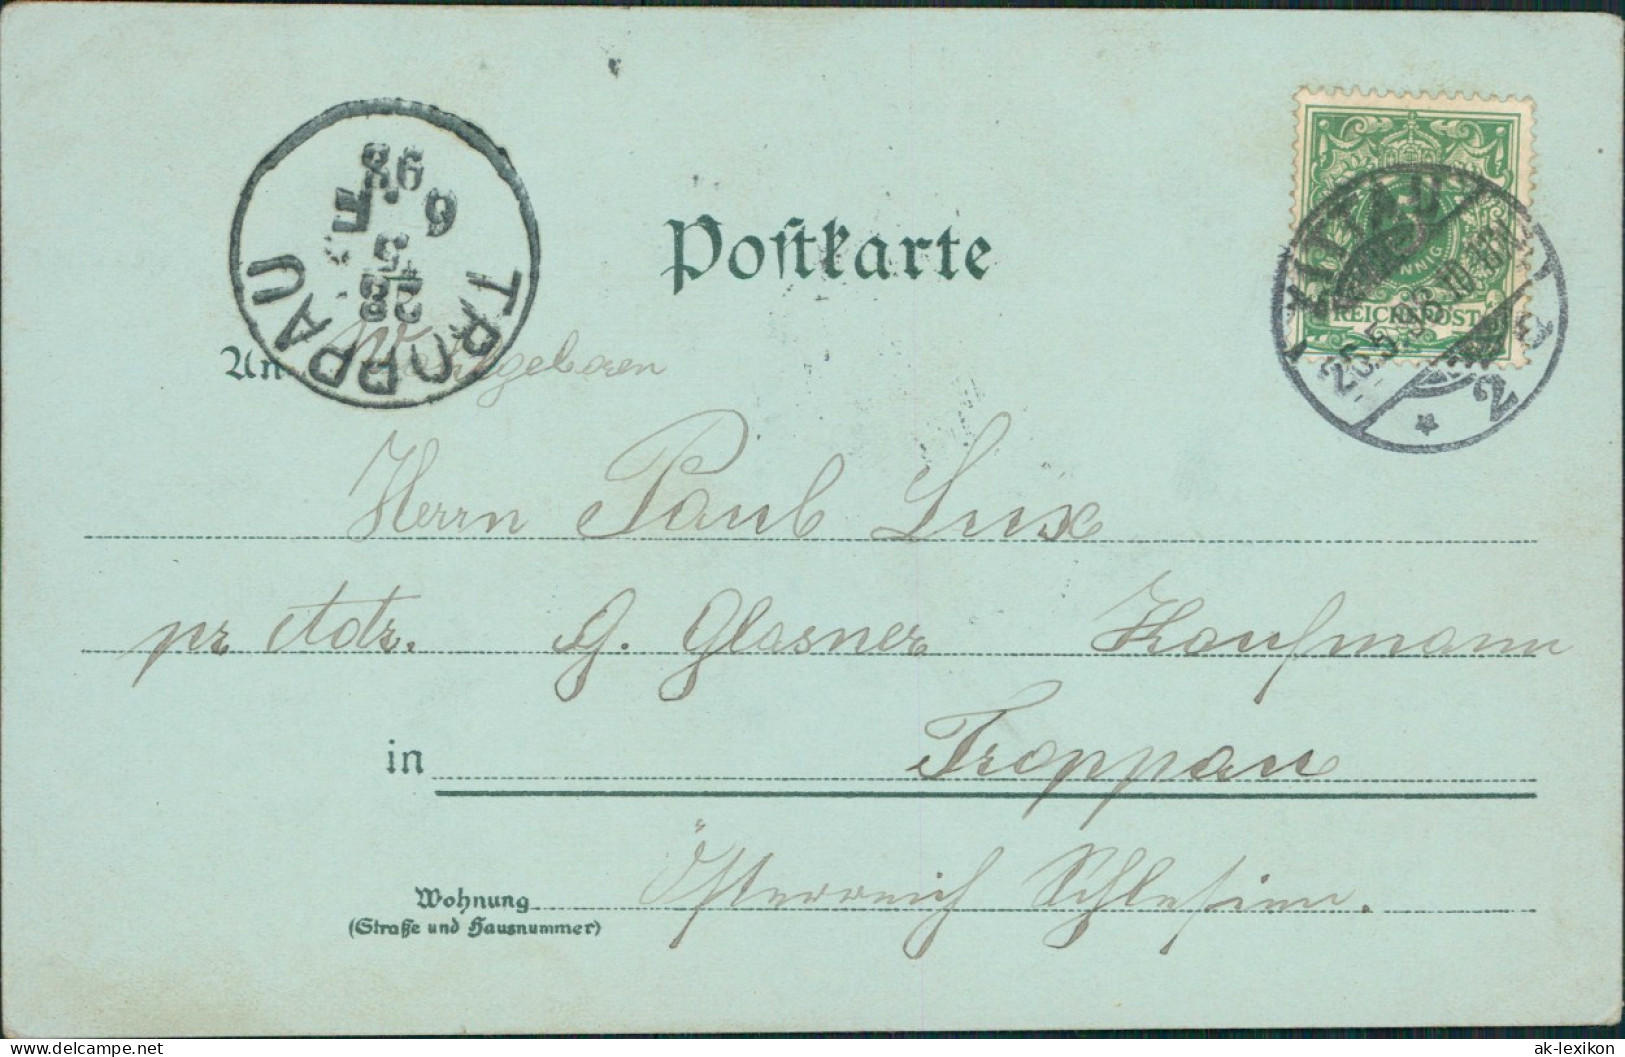 Ansichtskarte Zittau Kaserne, Post Uvm Mondschein Litho AK 1898 - Zittau